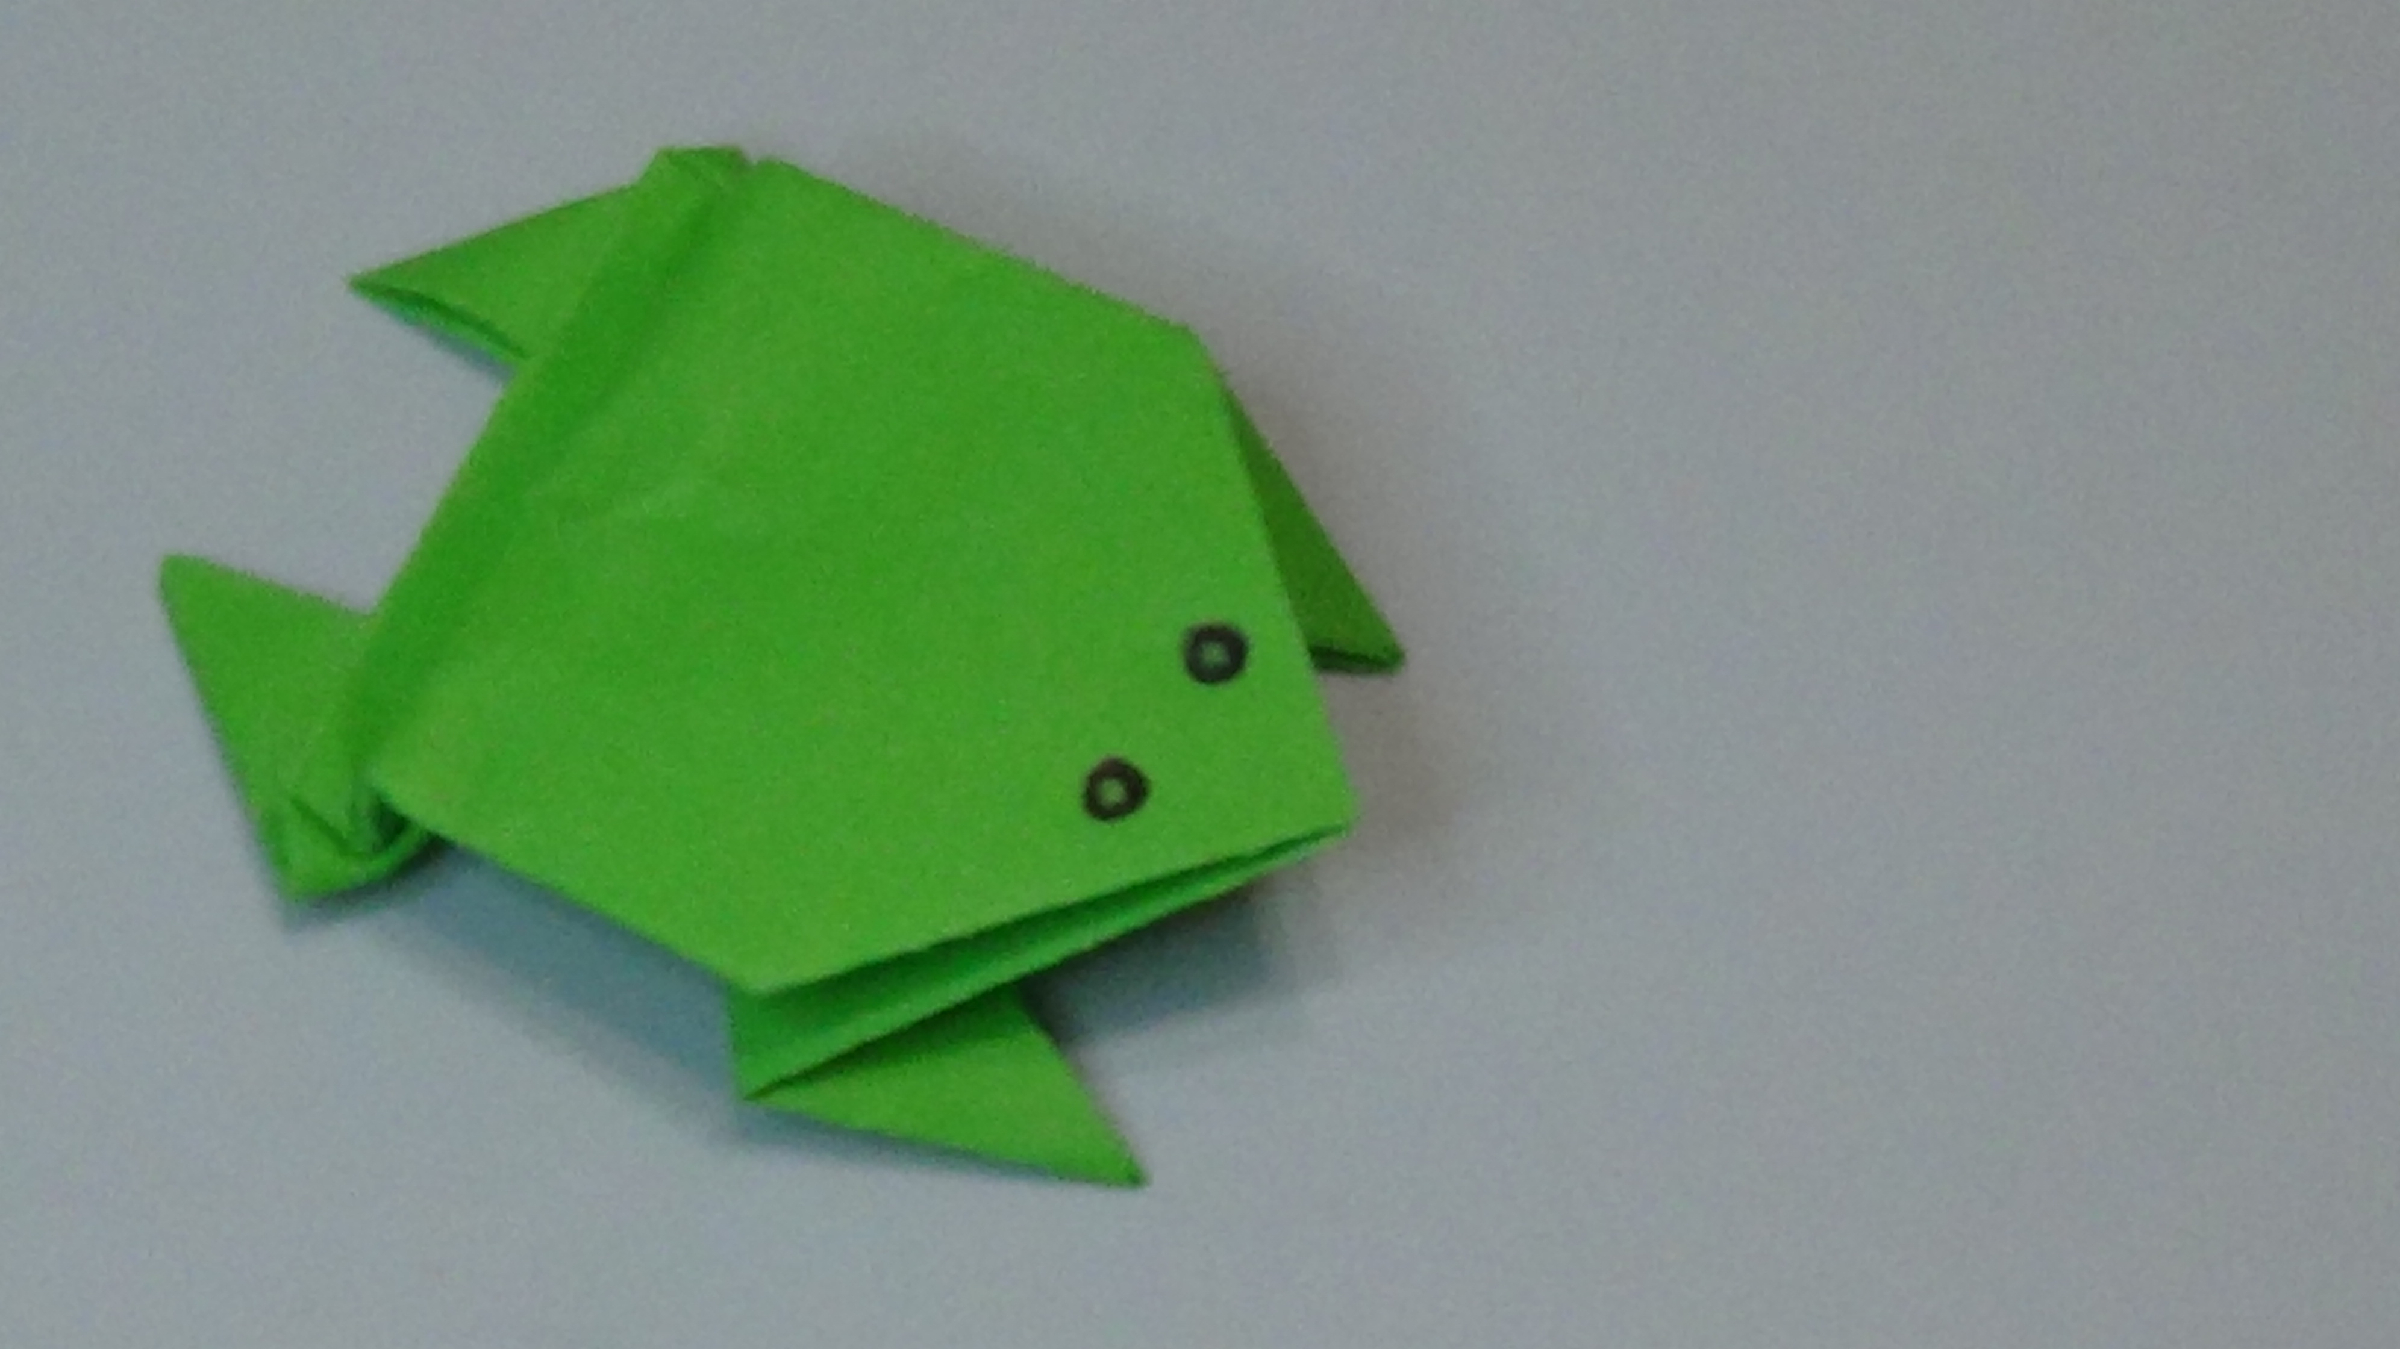 Оригами лягушка из бумаги 2 класс математика. Оригами голова лягушки. Оригами голова лягушки 2 класс. Оригами лягушка 2 класс математика. Оригами лягушка голова лягушки.